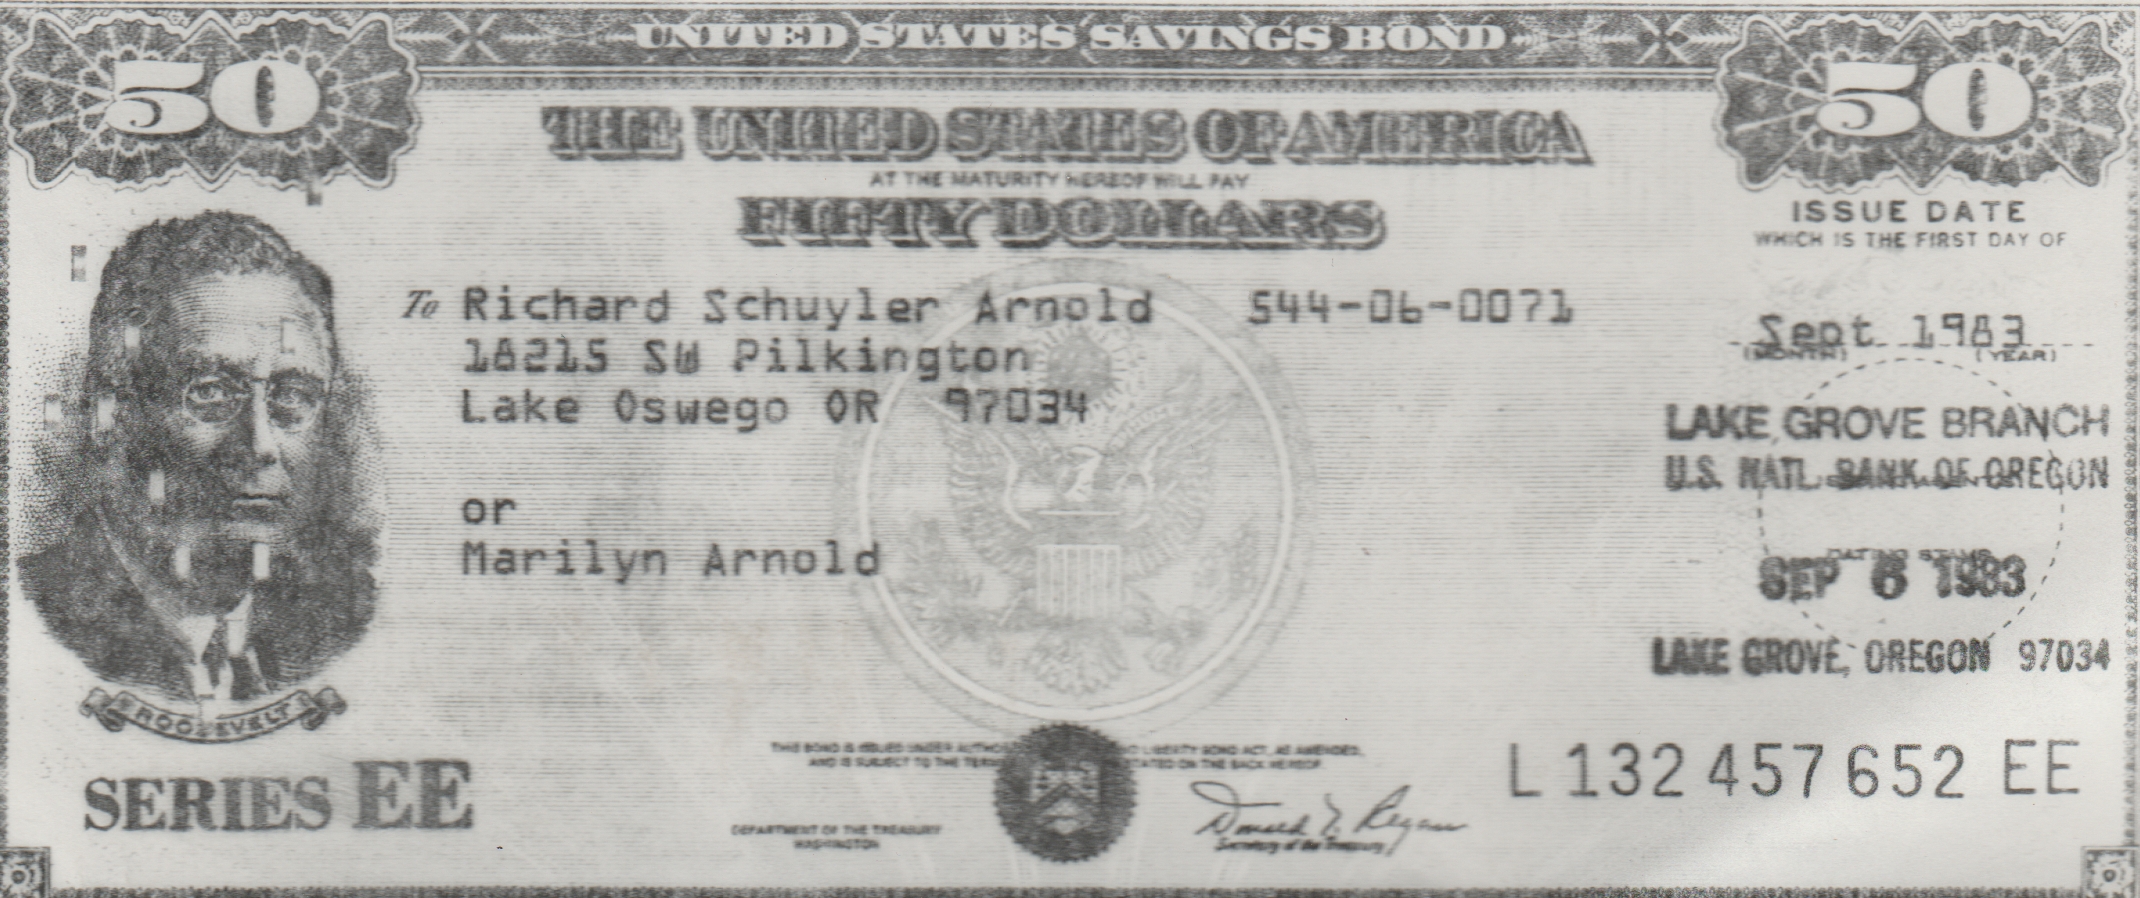 1983-09-06 - $50 USD Savings Bond - Rick, Lake Grove, OR 97034, Series EE, or Marilyn, checked in 1992.jpg